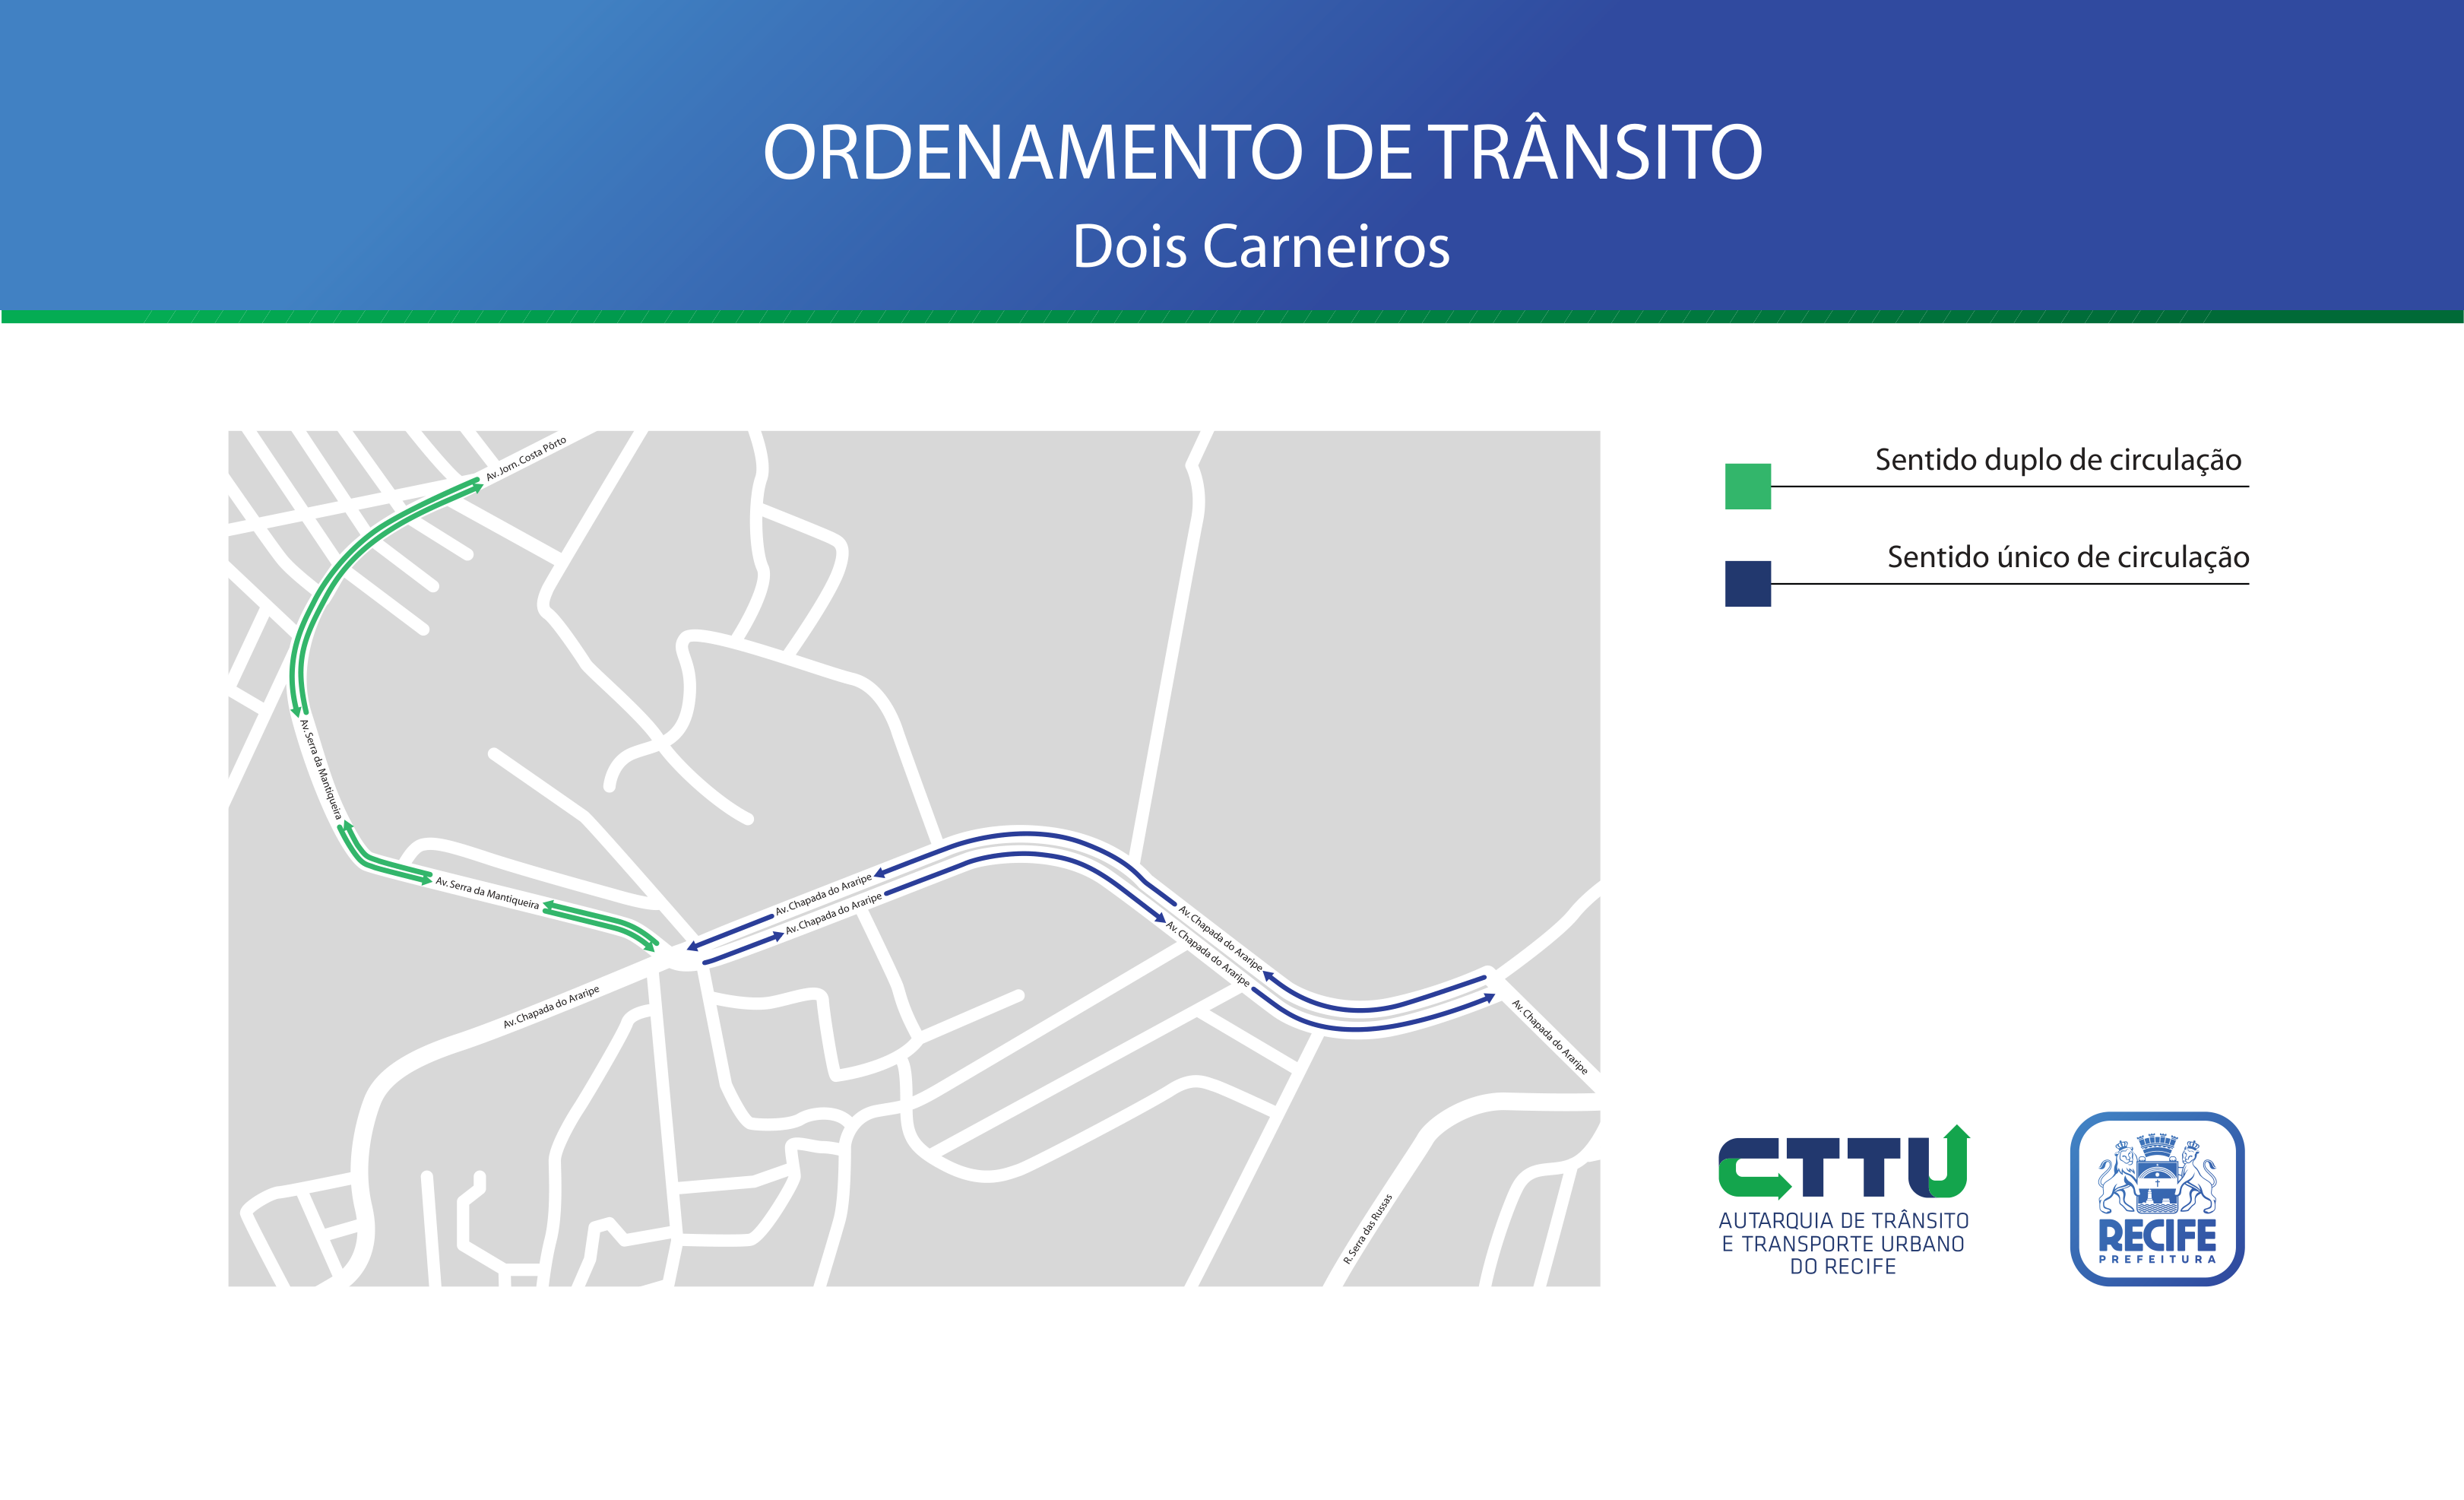 CTTU implanta ordenamento de trânsito no bairro de Dois Carneiros